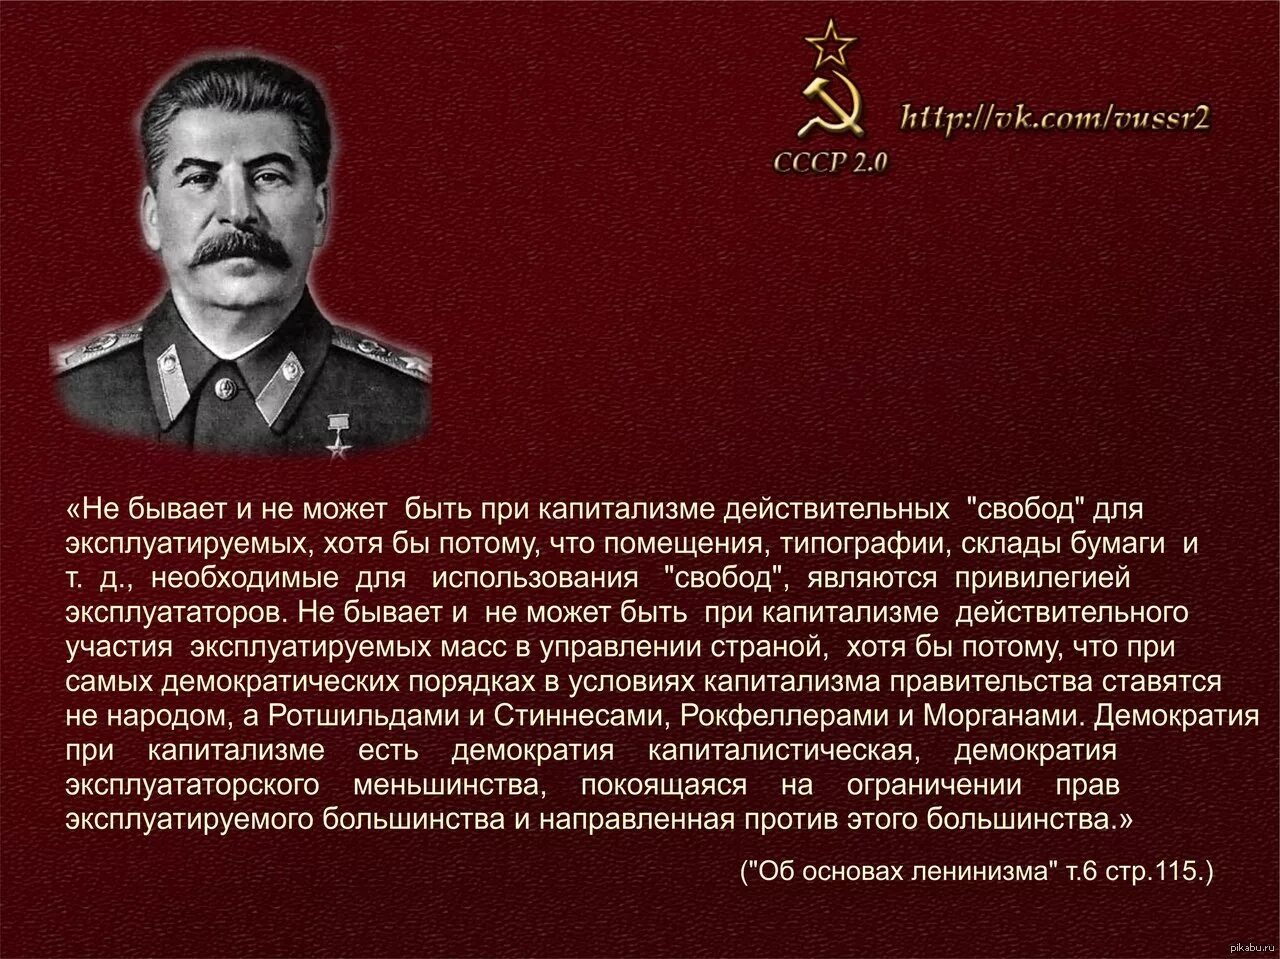 1 в наше время чтение стало привилегией. Цитаты Сталина. Сталин о свободе. Сталин о капитализме. Высказывание Сталина о демократии.